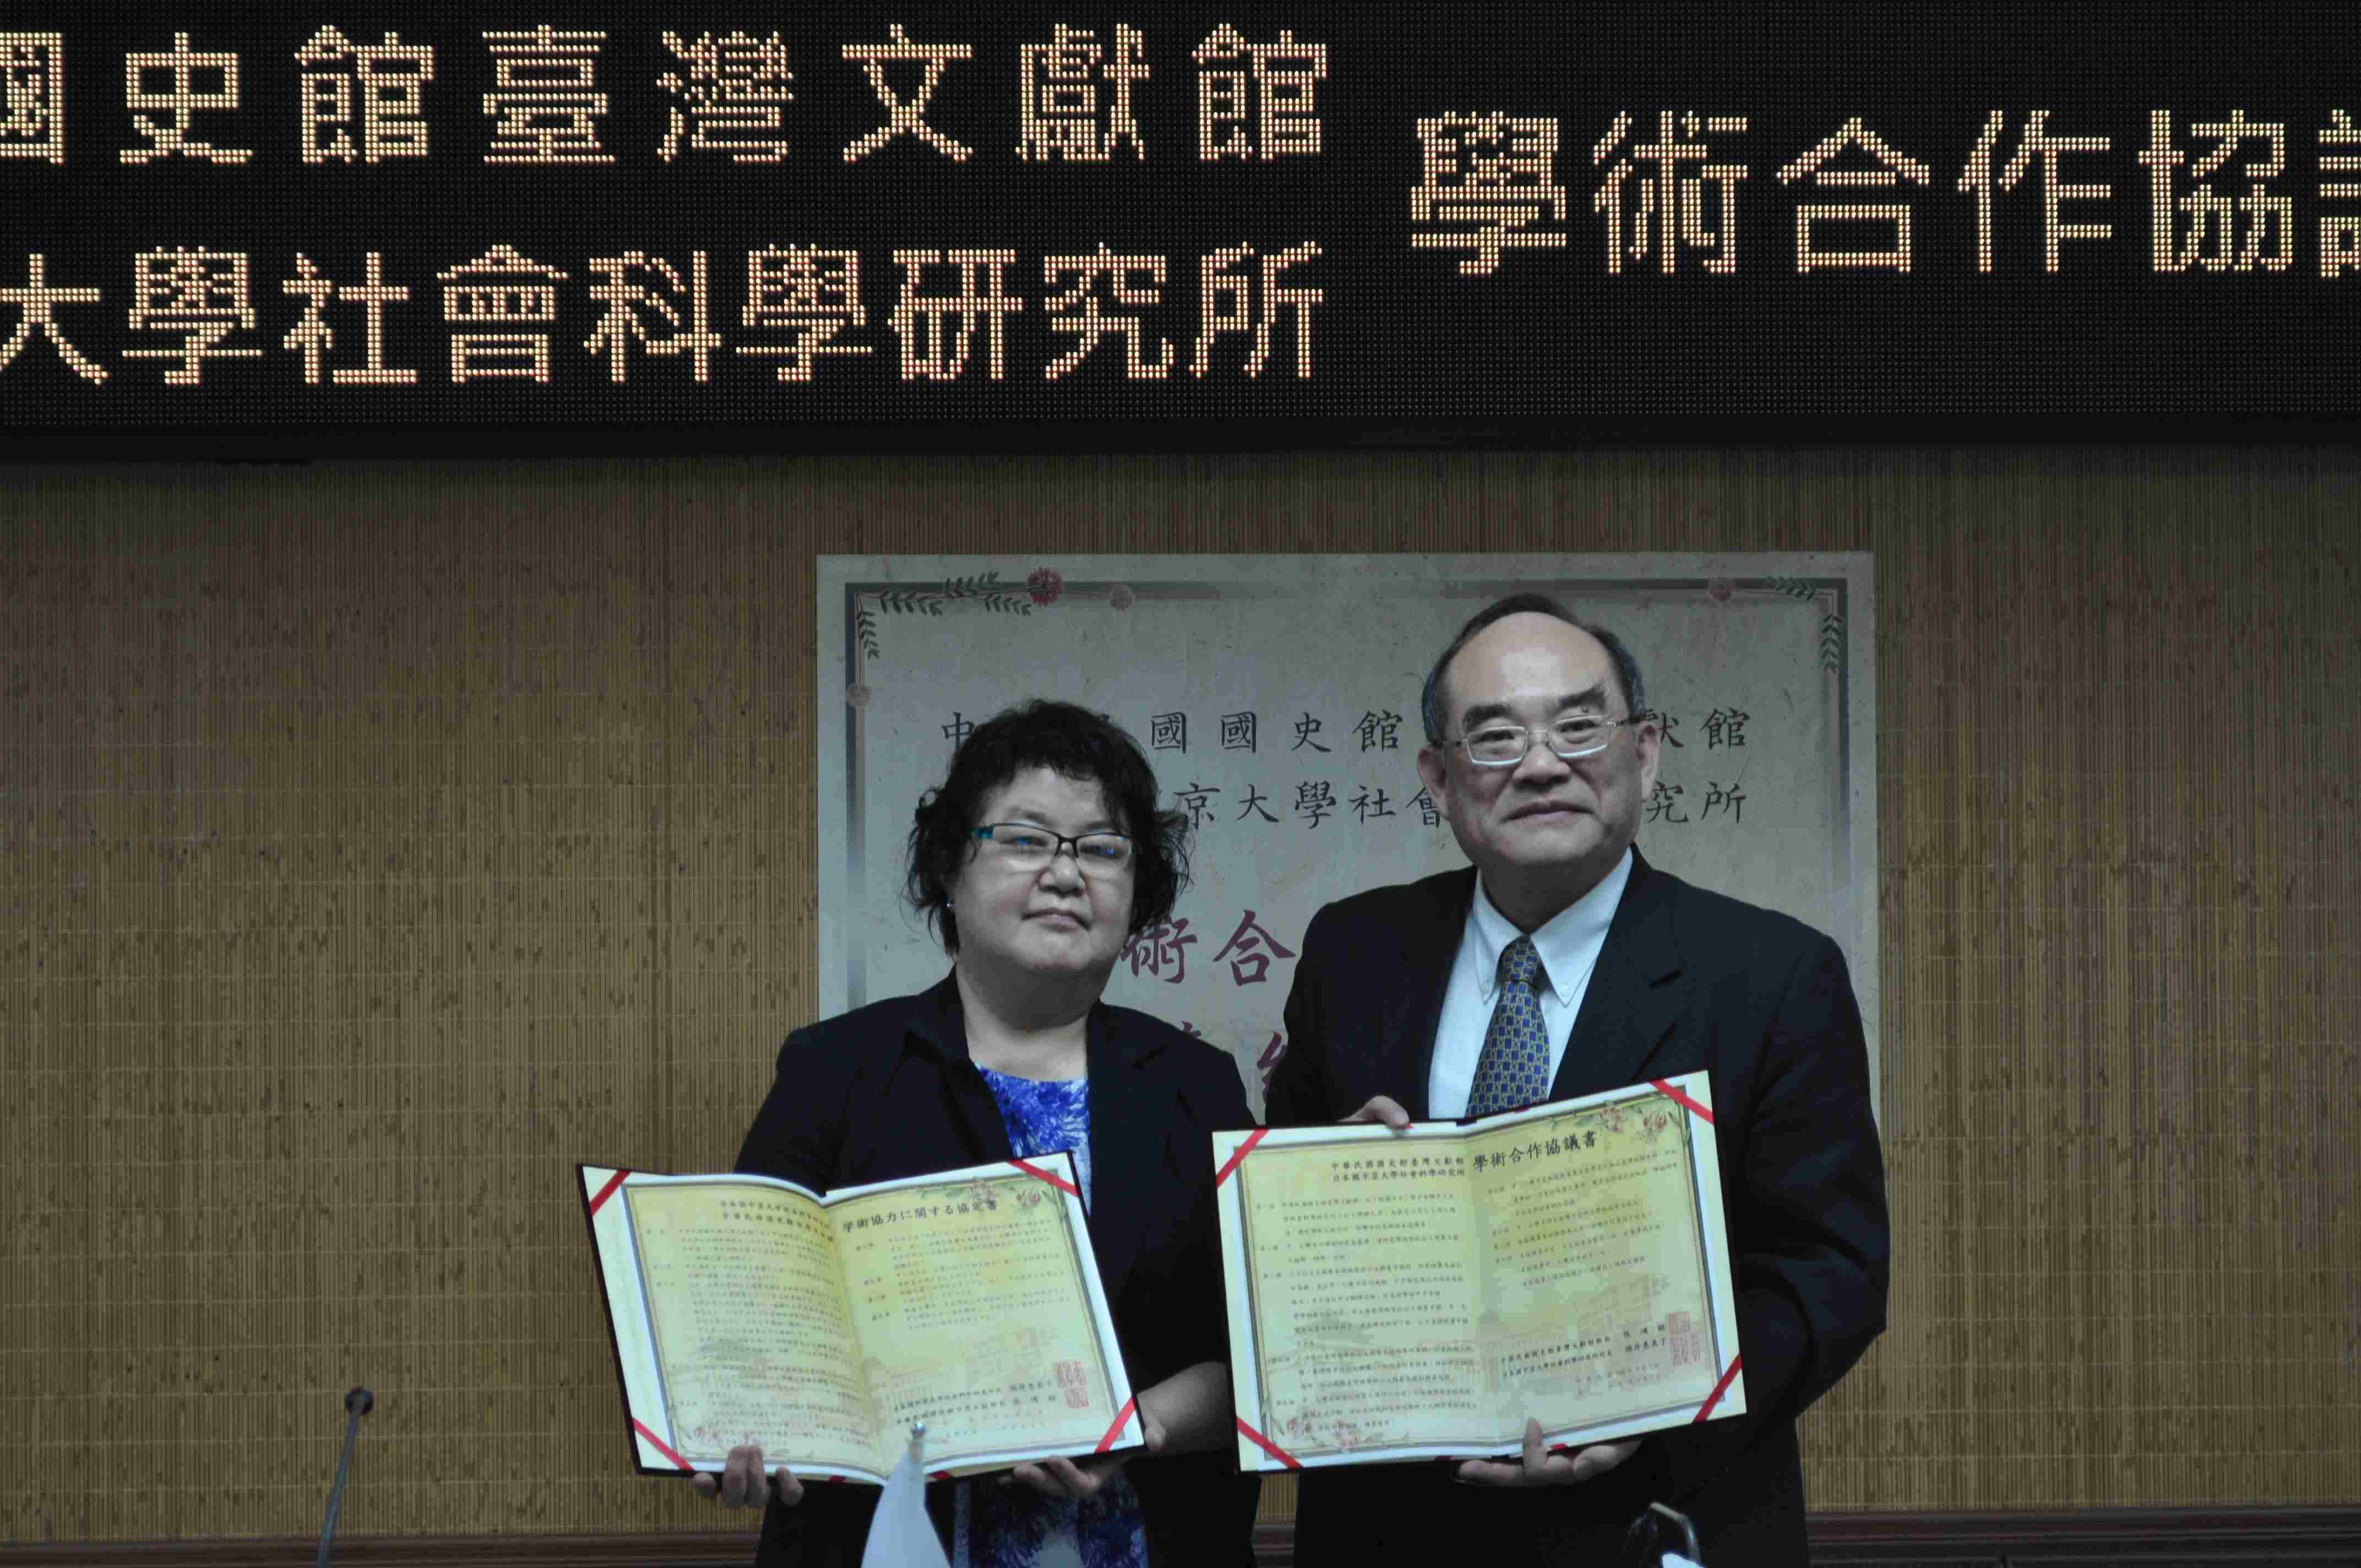 本館與日本中京大學社會科學研究所續簽學術合作協議